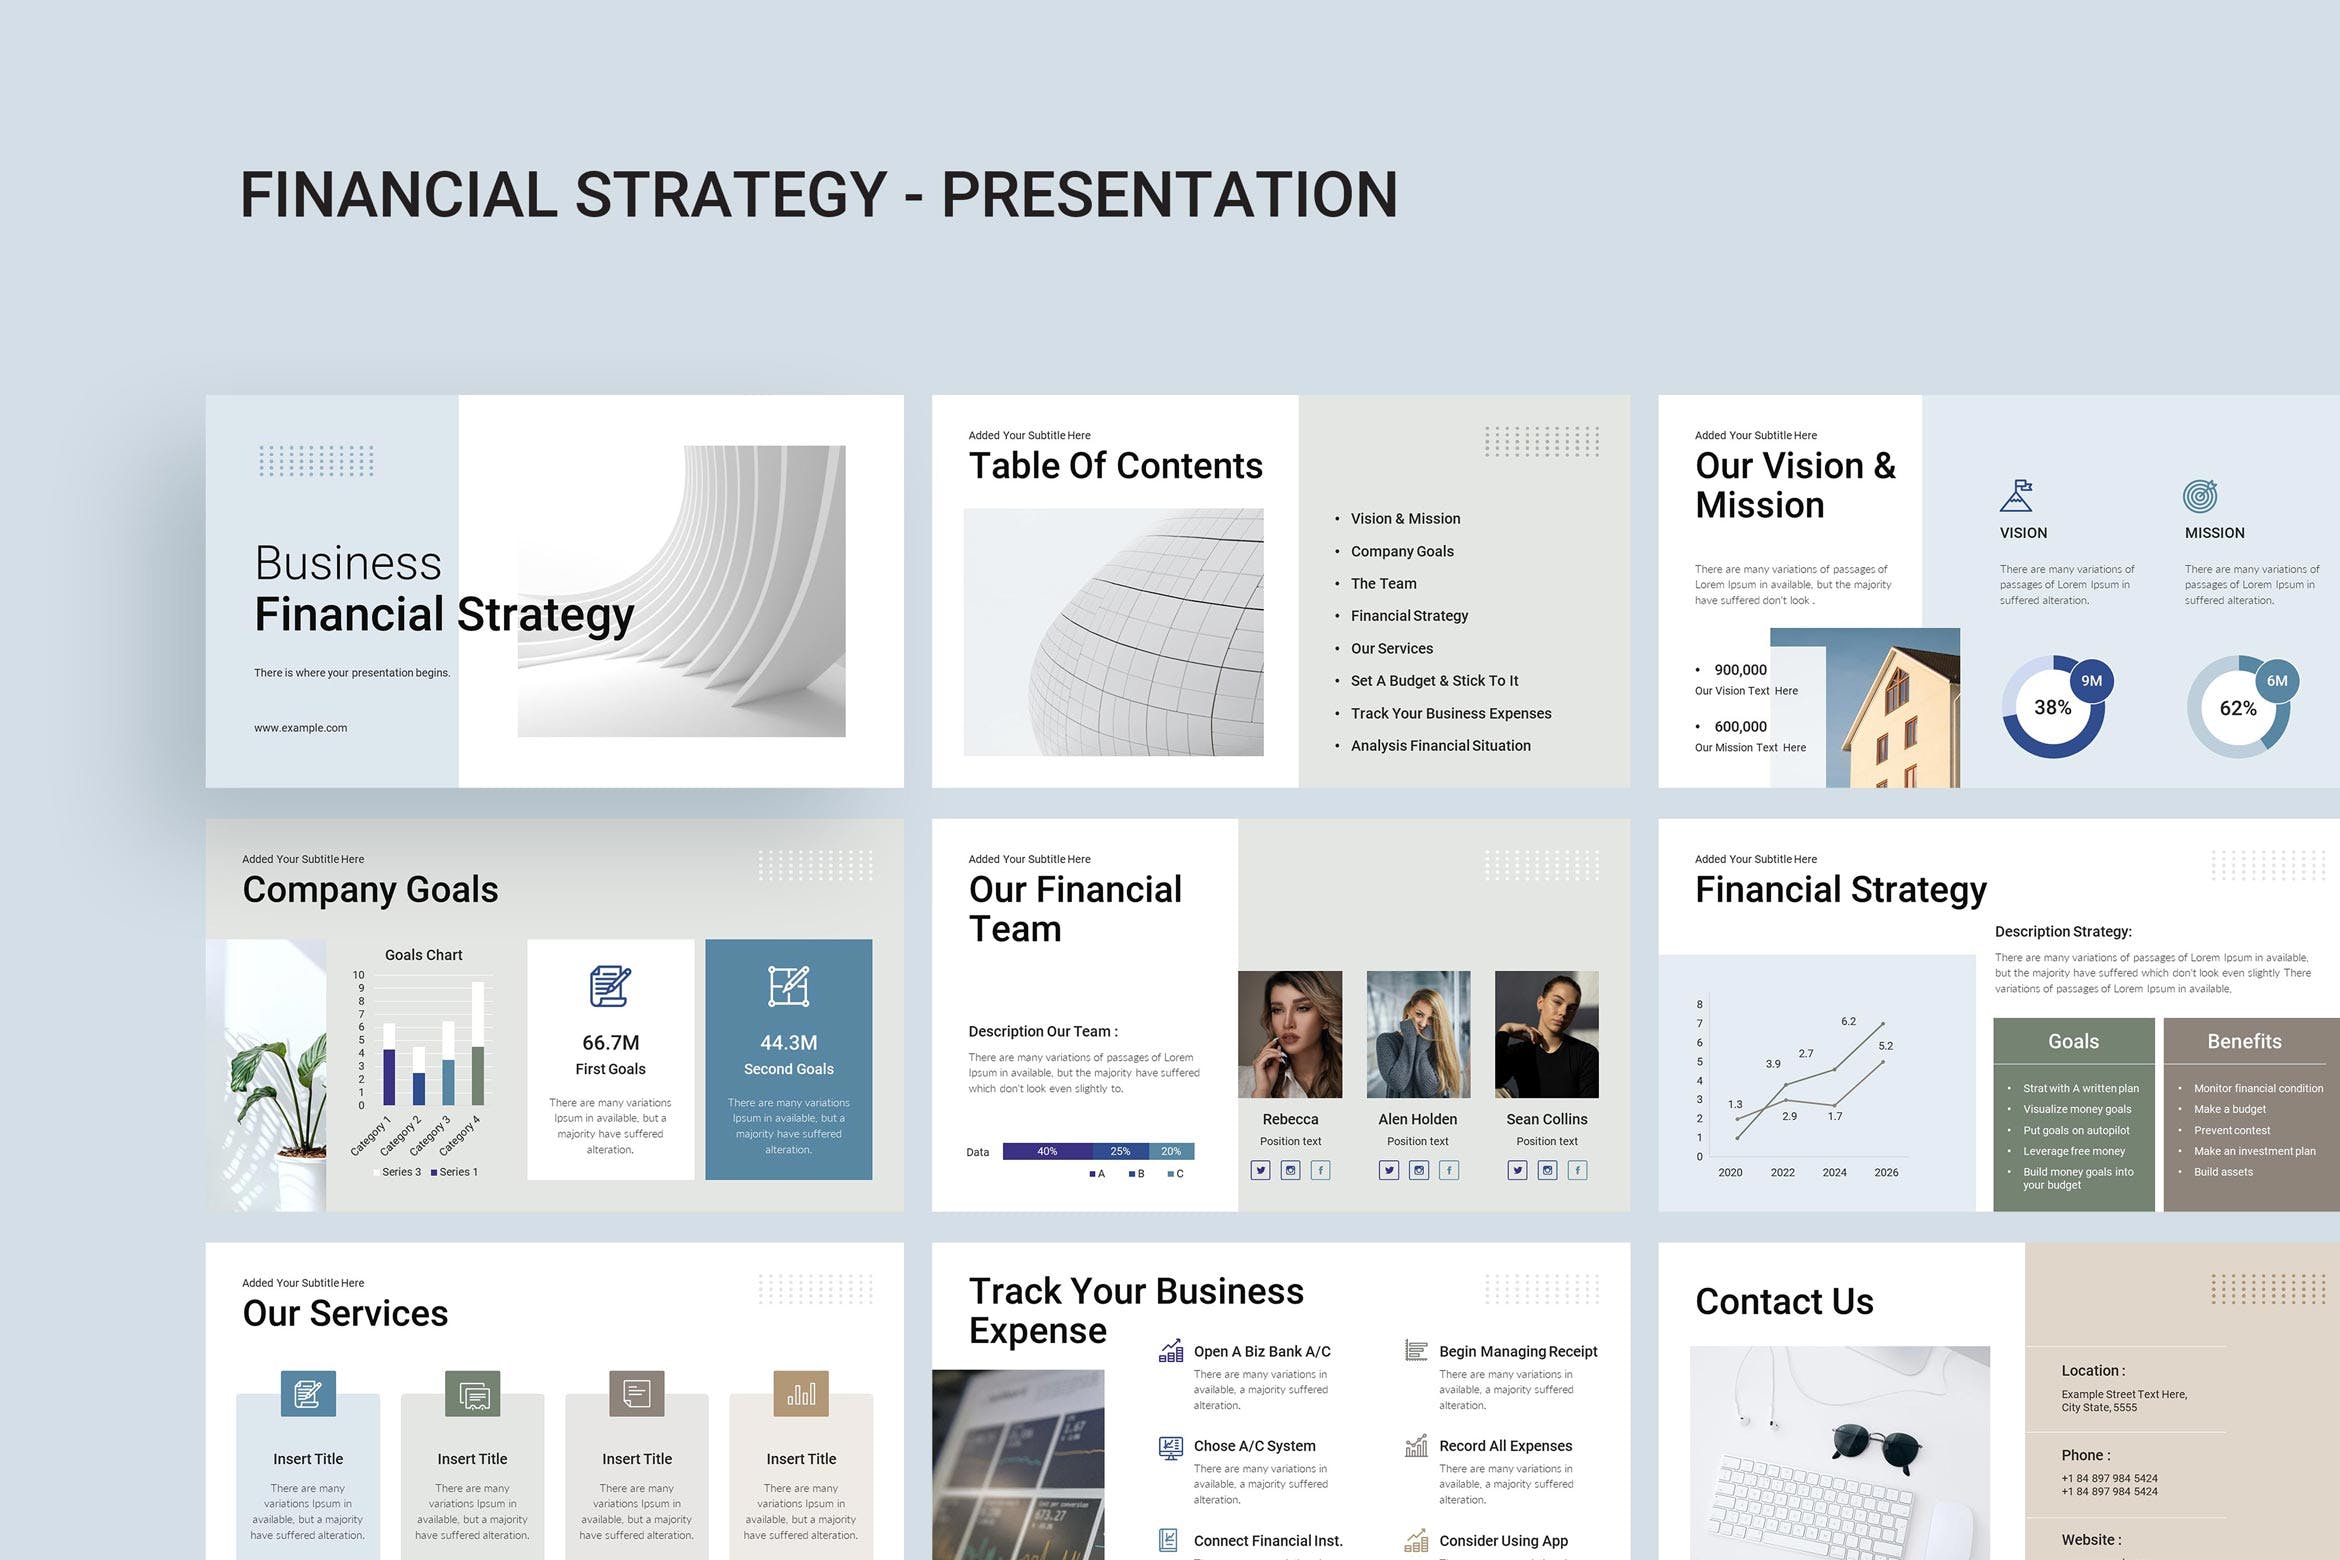 4664 公司企业财务报表数据规划分析图表PPT+Keynote模版 Financial Strategy Keynote Presentation Template@GOOODME.COM